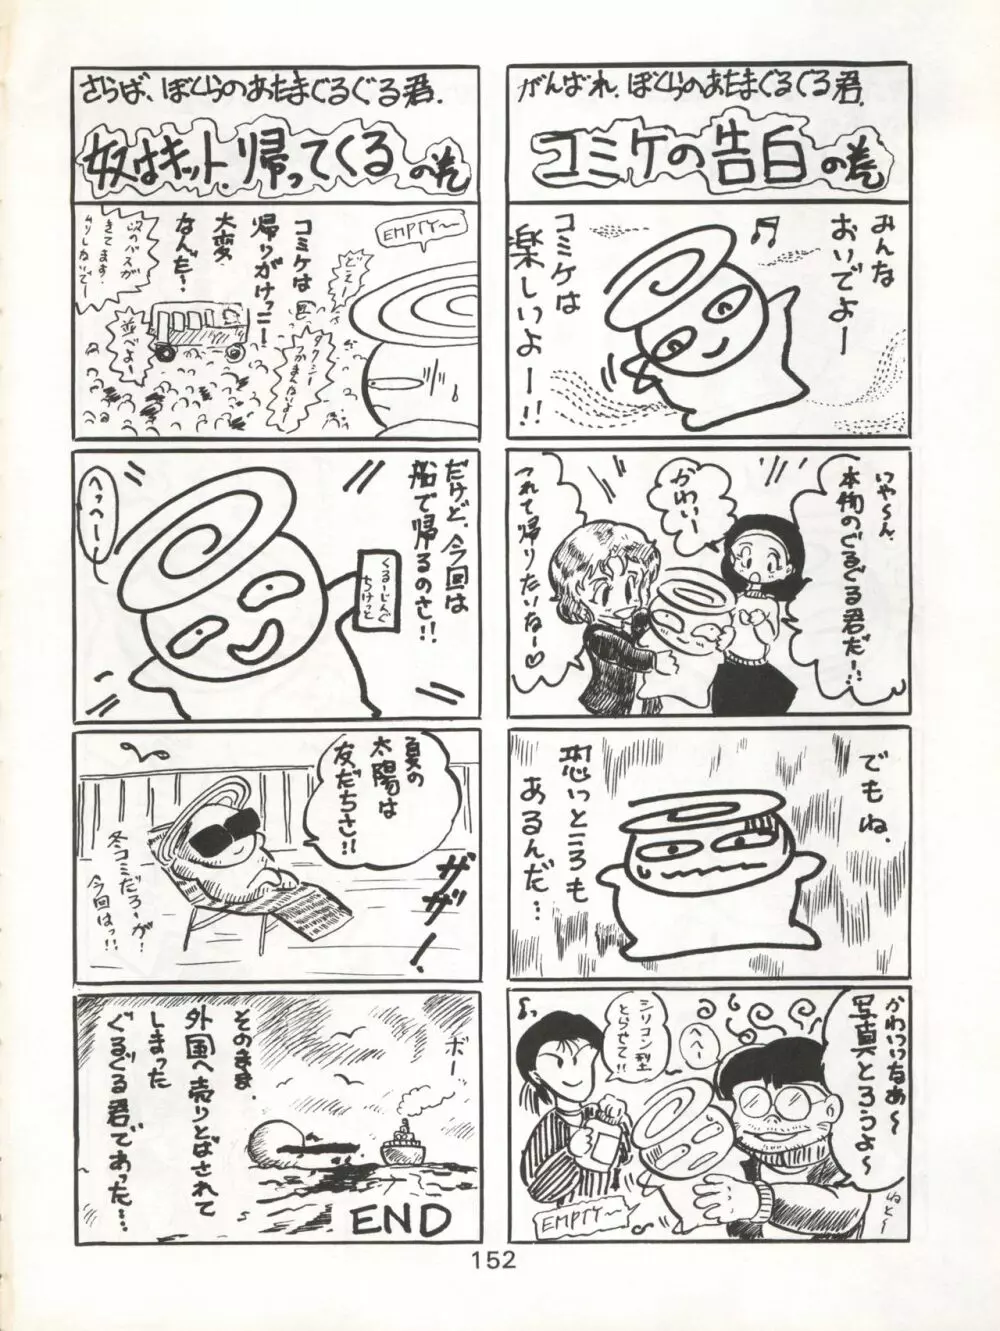 KATZE 7 上巻 - page153